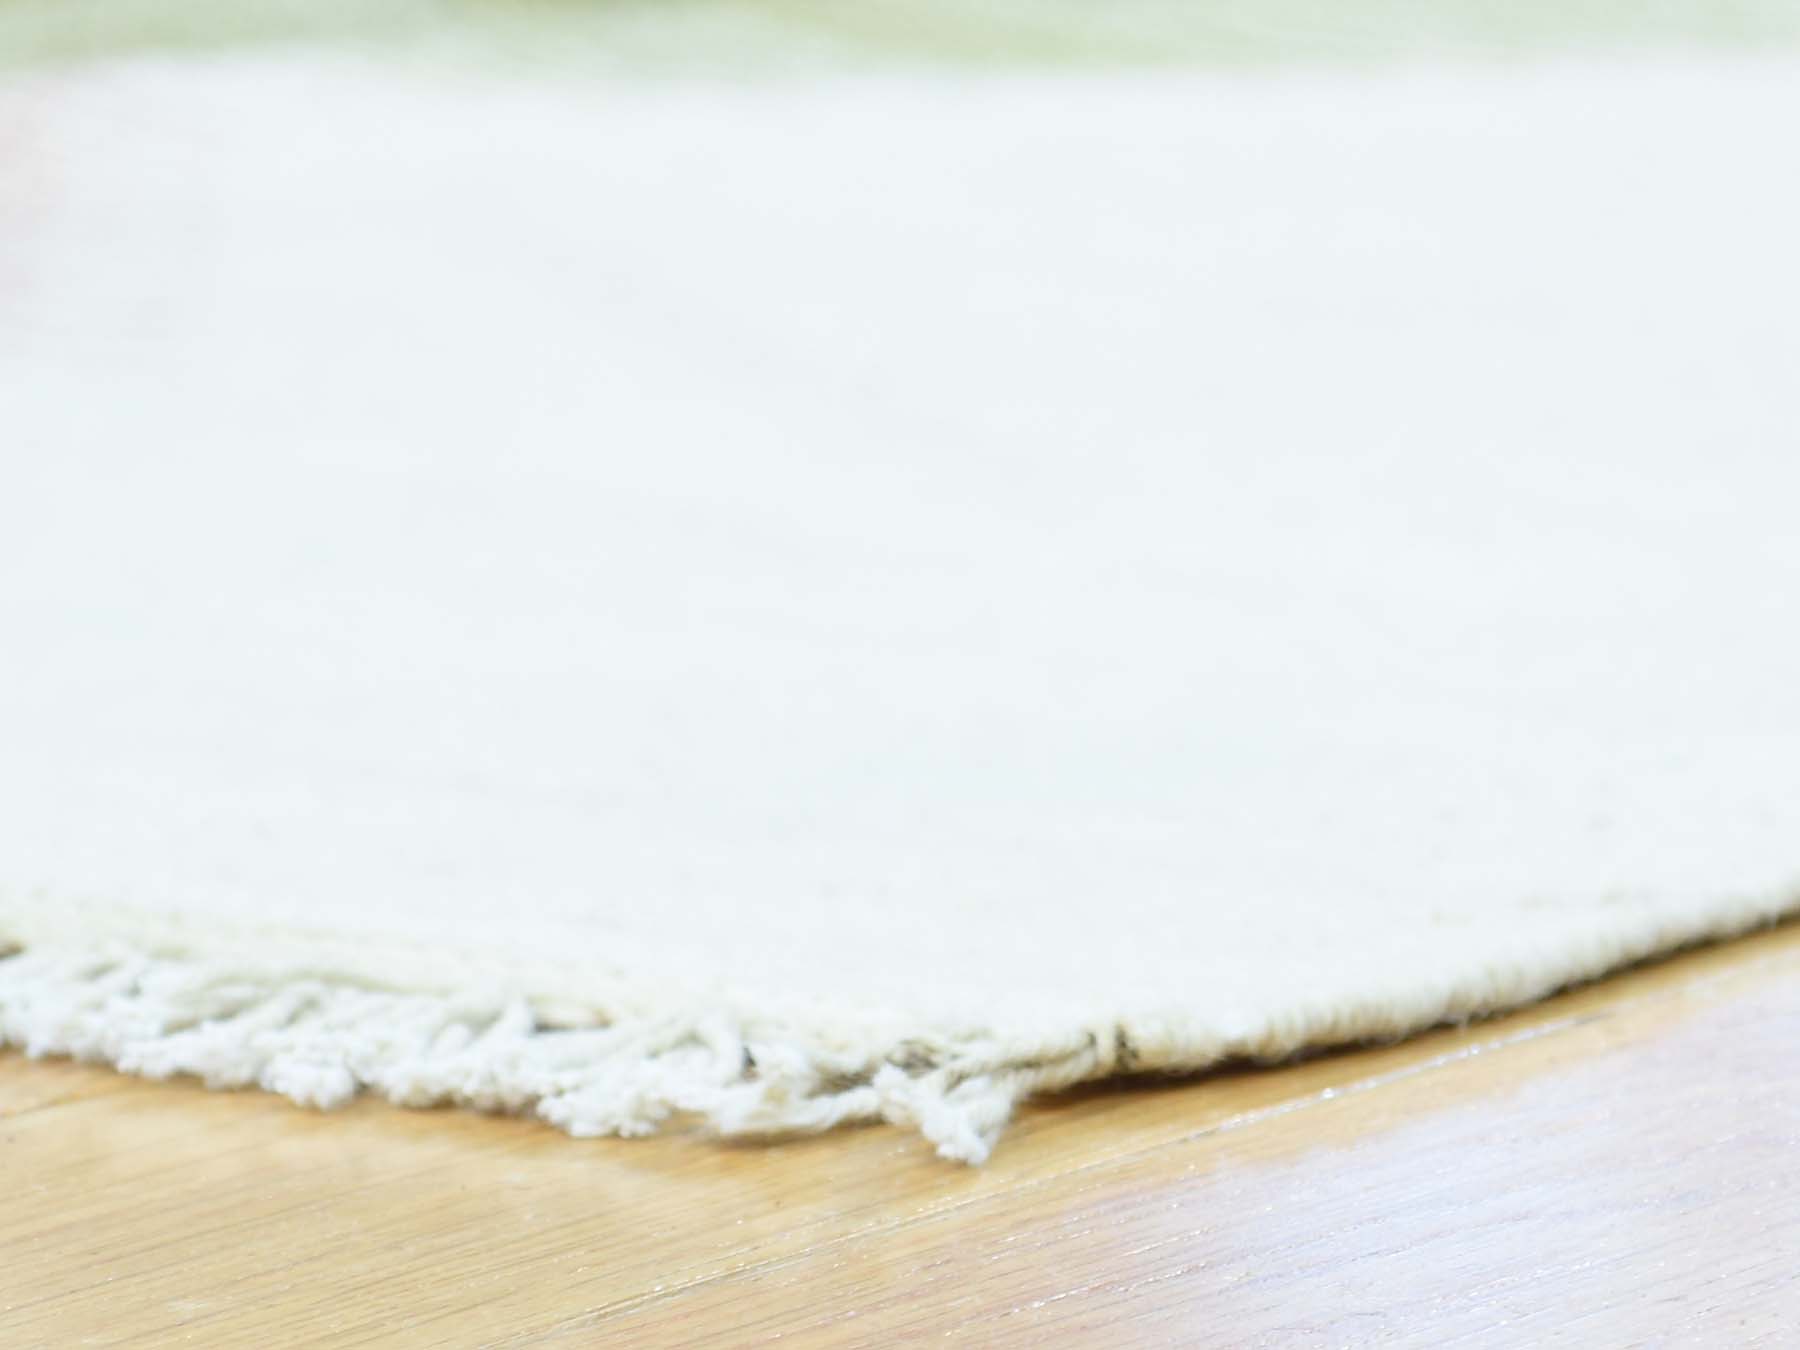 flat weave rugs LUV287100